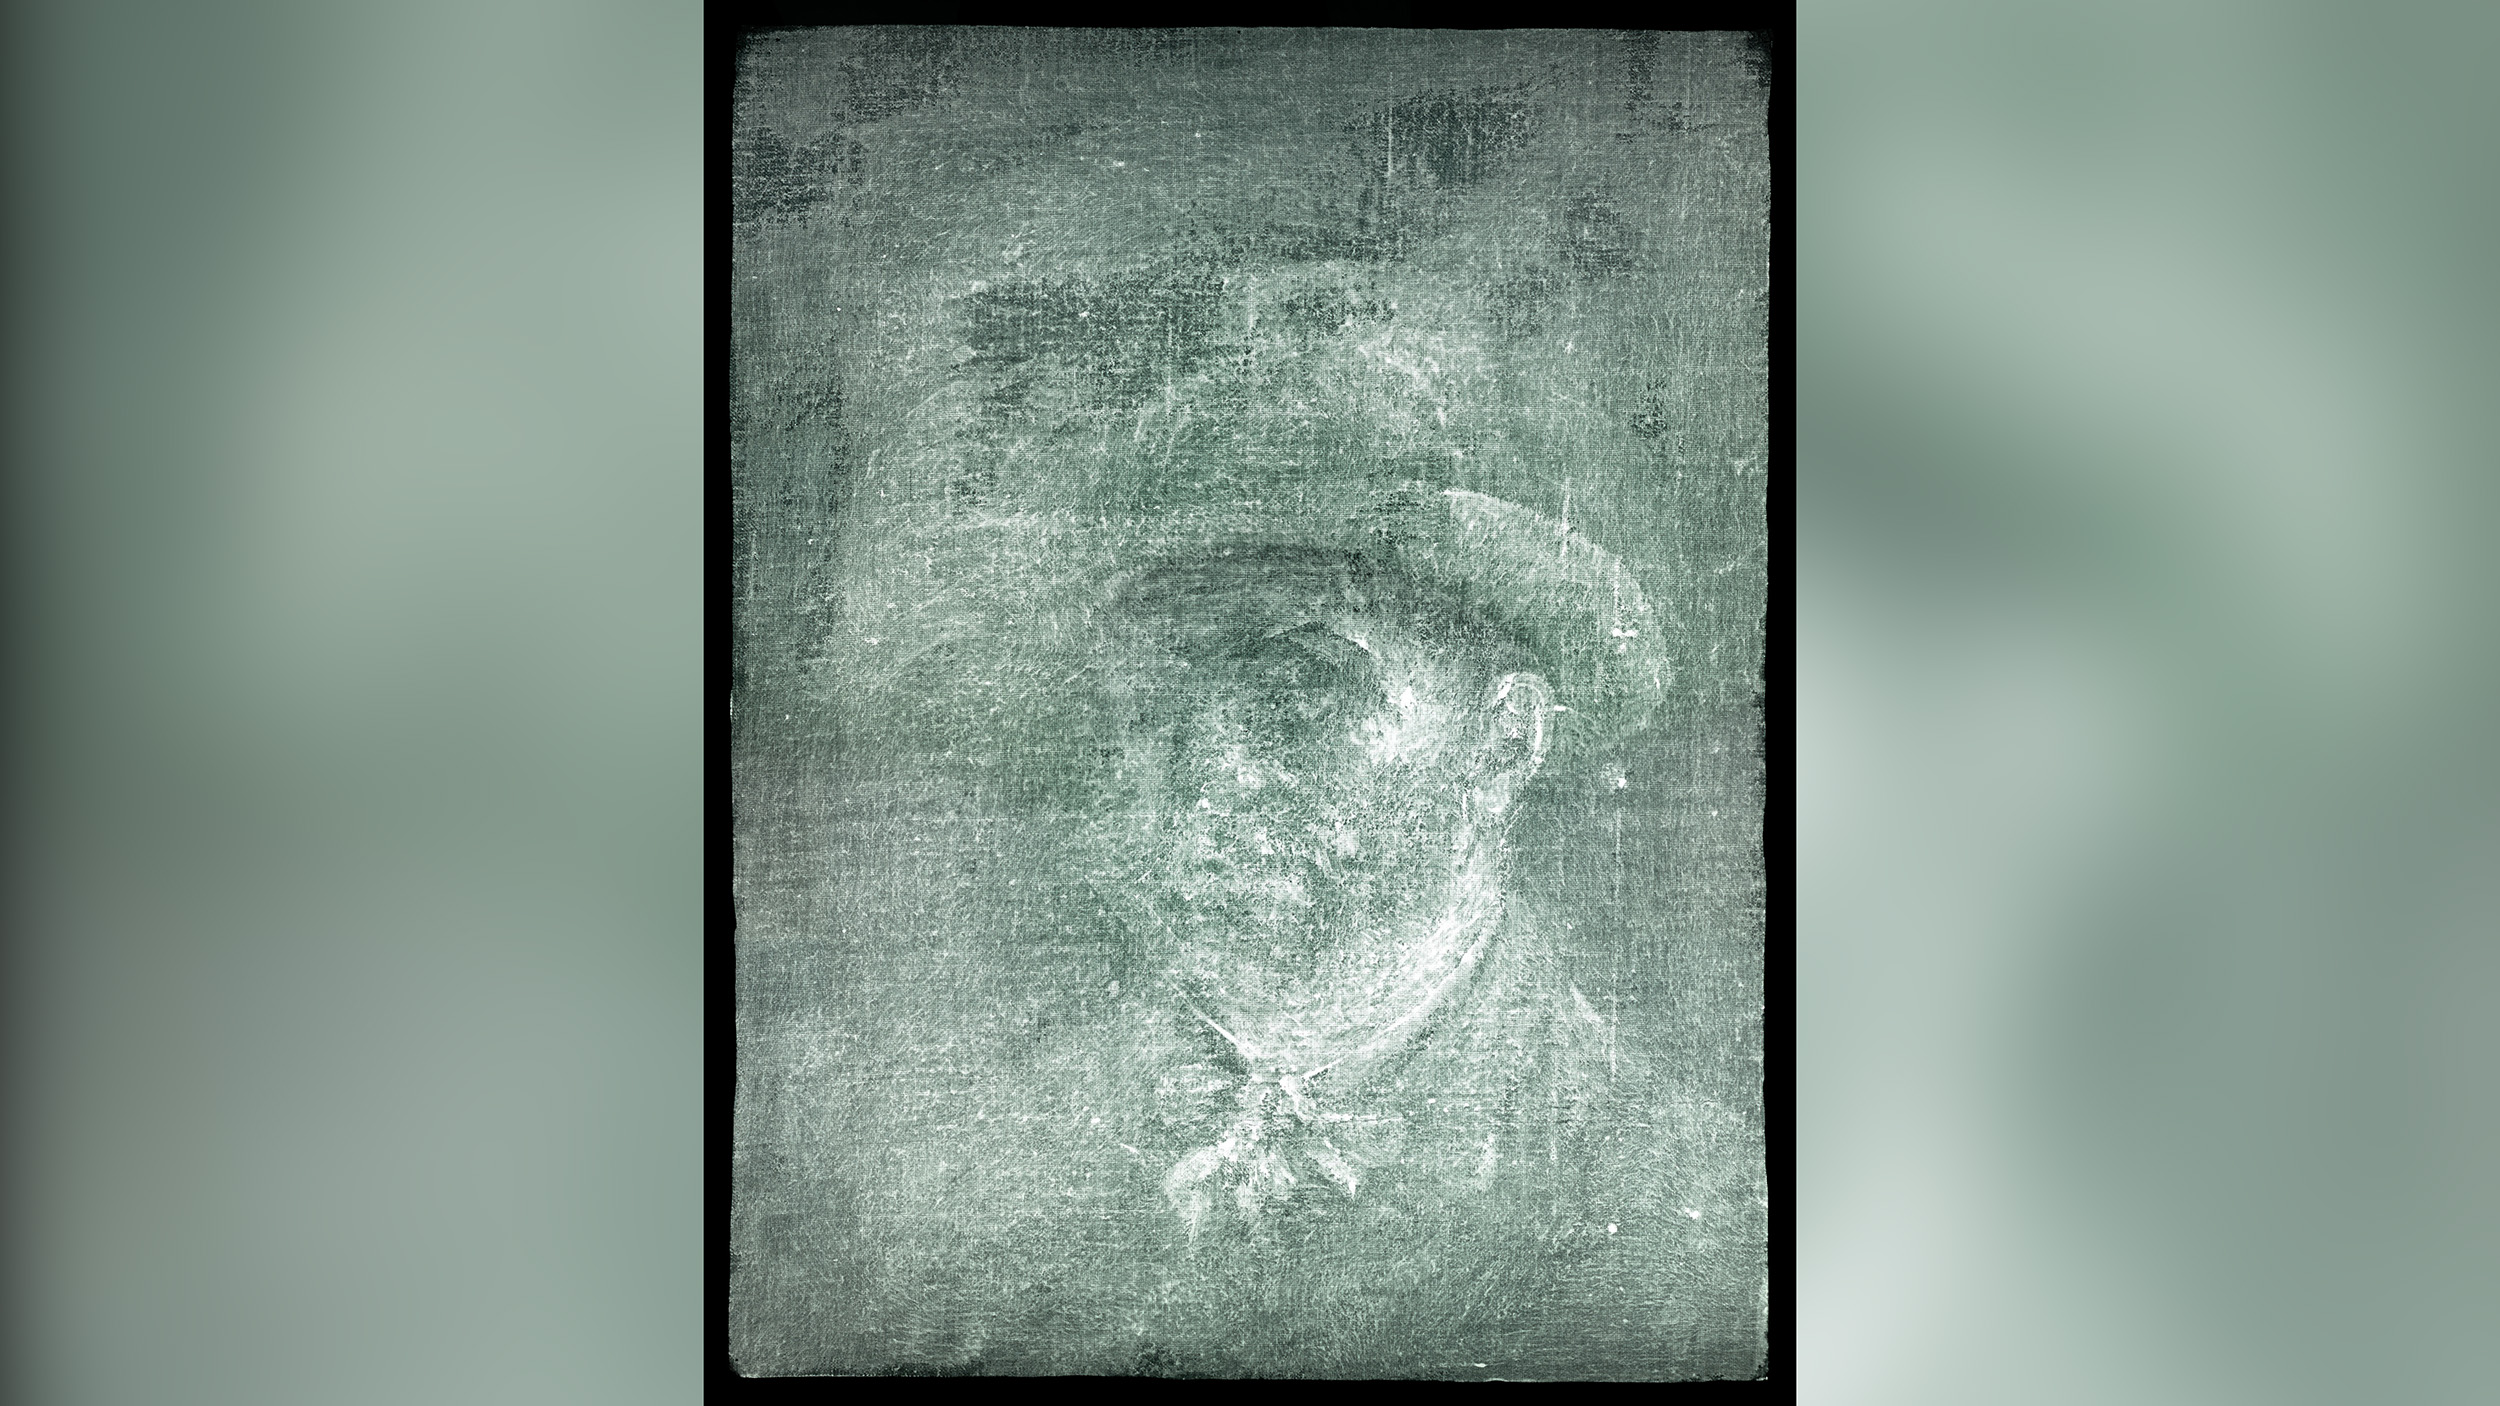 Van Gogh hidden self-portrait has been discovered in Scotland